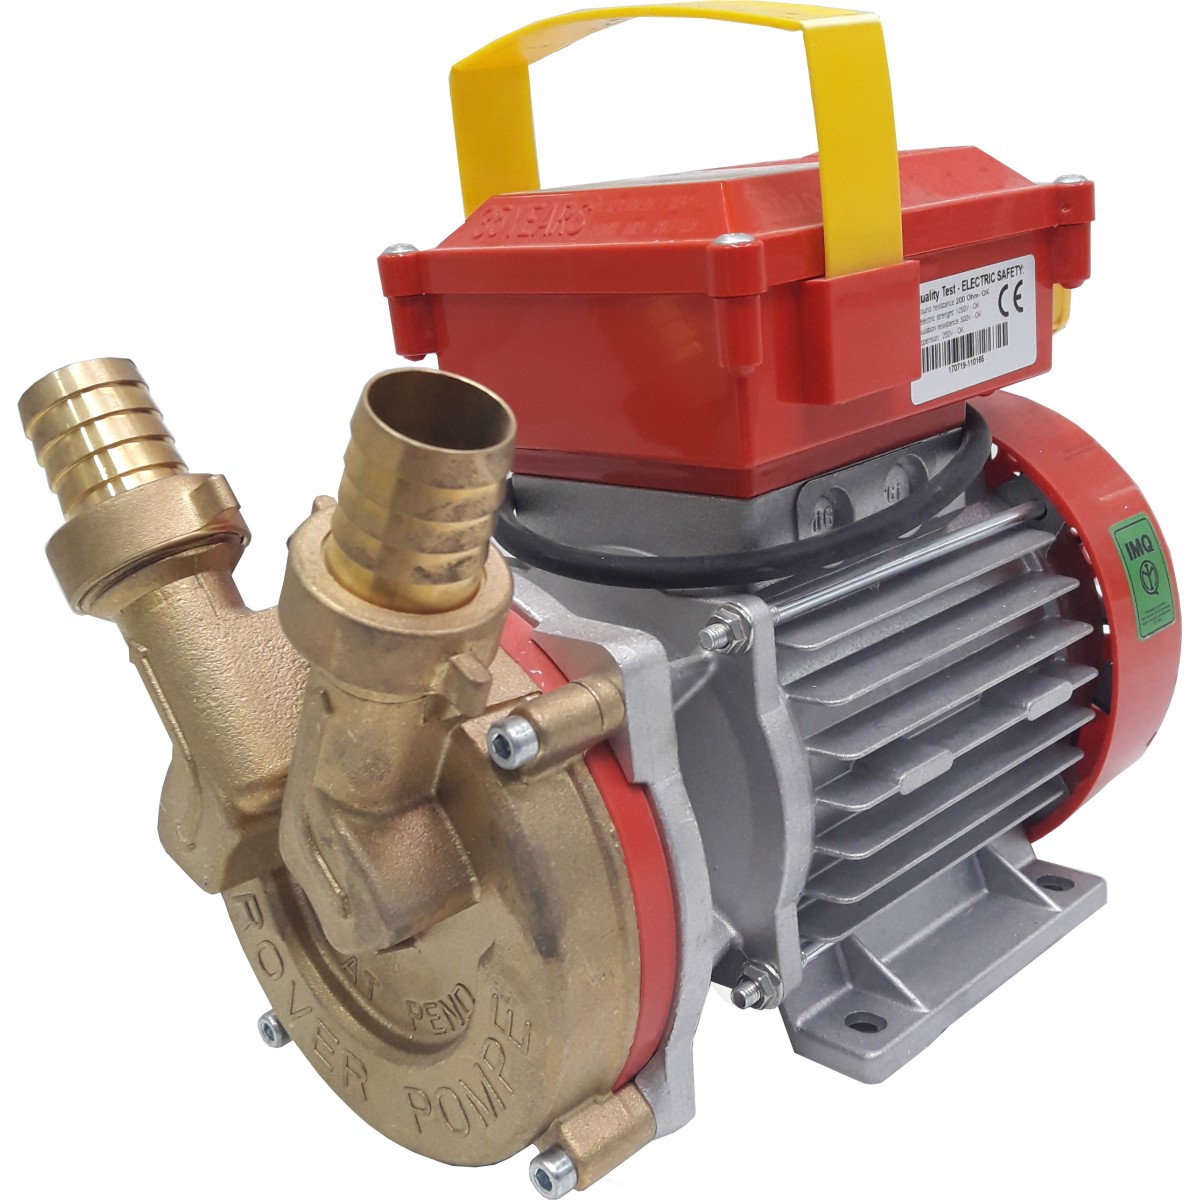 Pompe hydraulique manuelle Spartex - réf. 886861 - Rubix